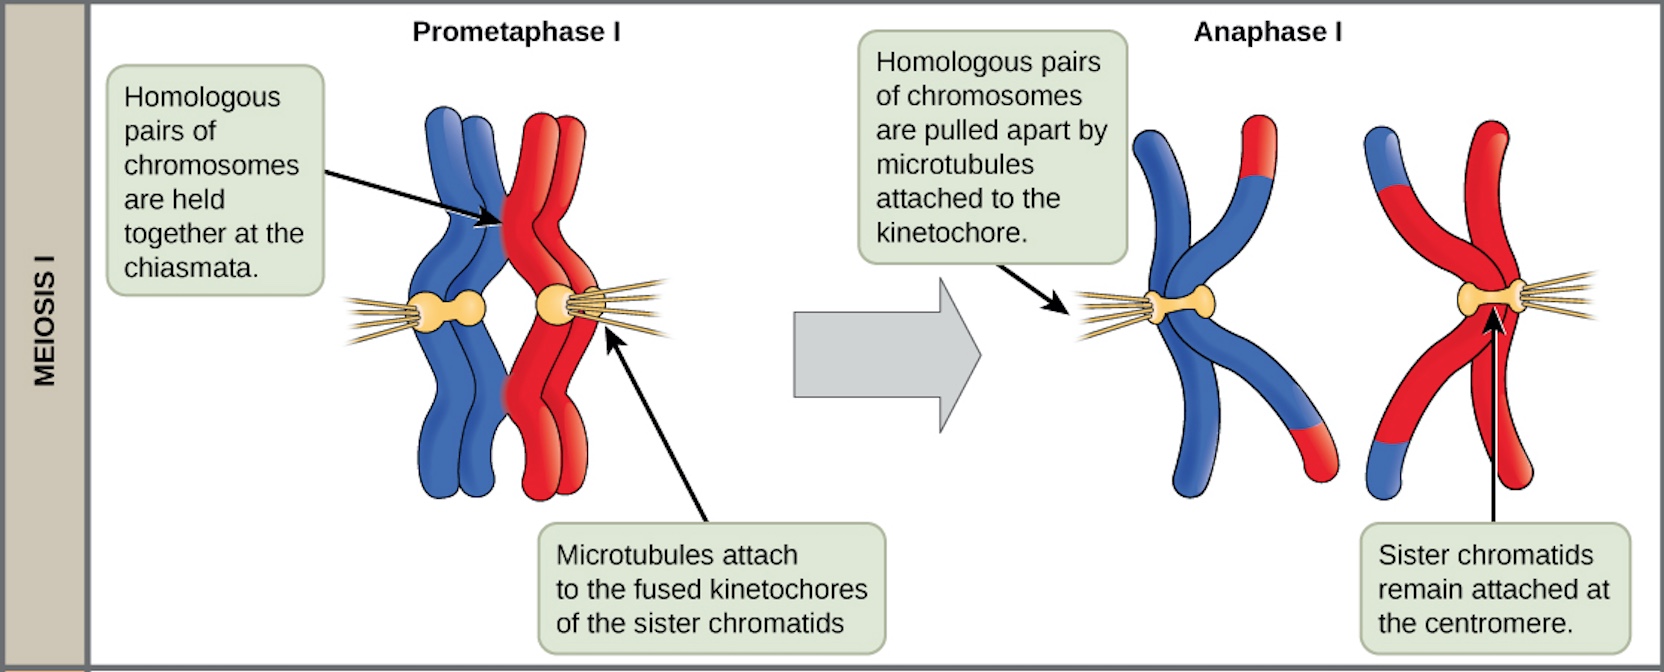 En la prometafase I, los pares homólogos de cromosomas se mantienen unidos por los quiasmas. En la anafase I, el par homólogo se separa y las conexiones en los quiasmas se rompen, pero las cromátidas hermanas permanecen unidas en el centrómero.